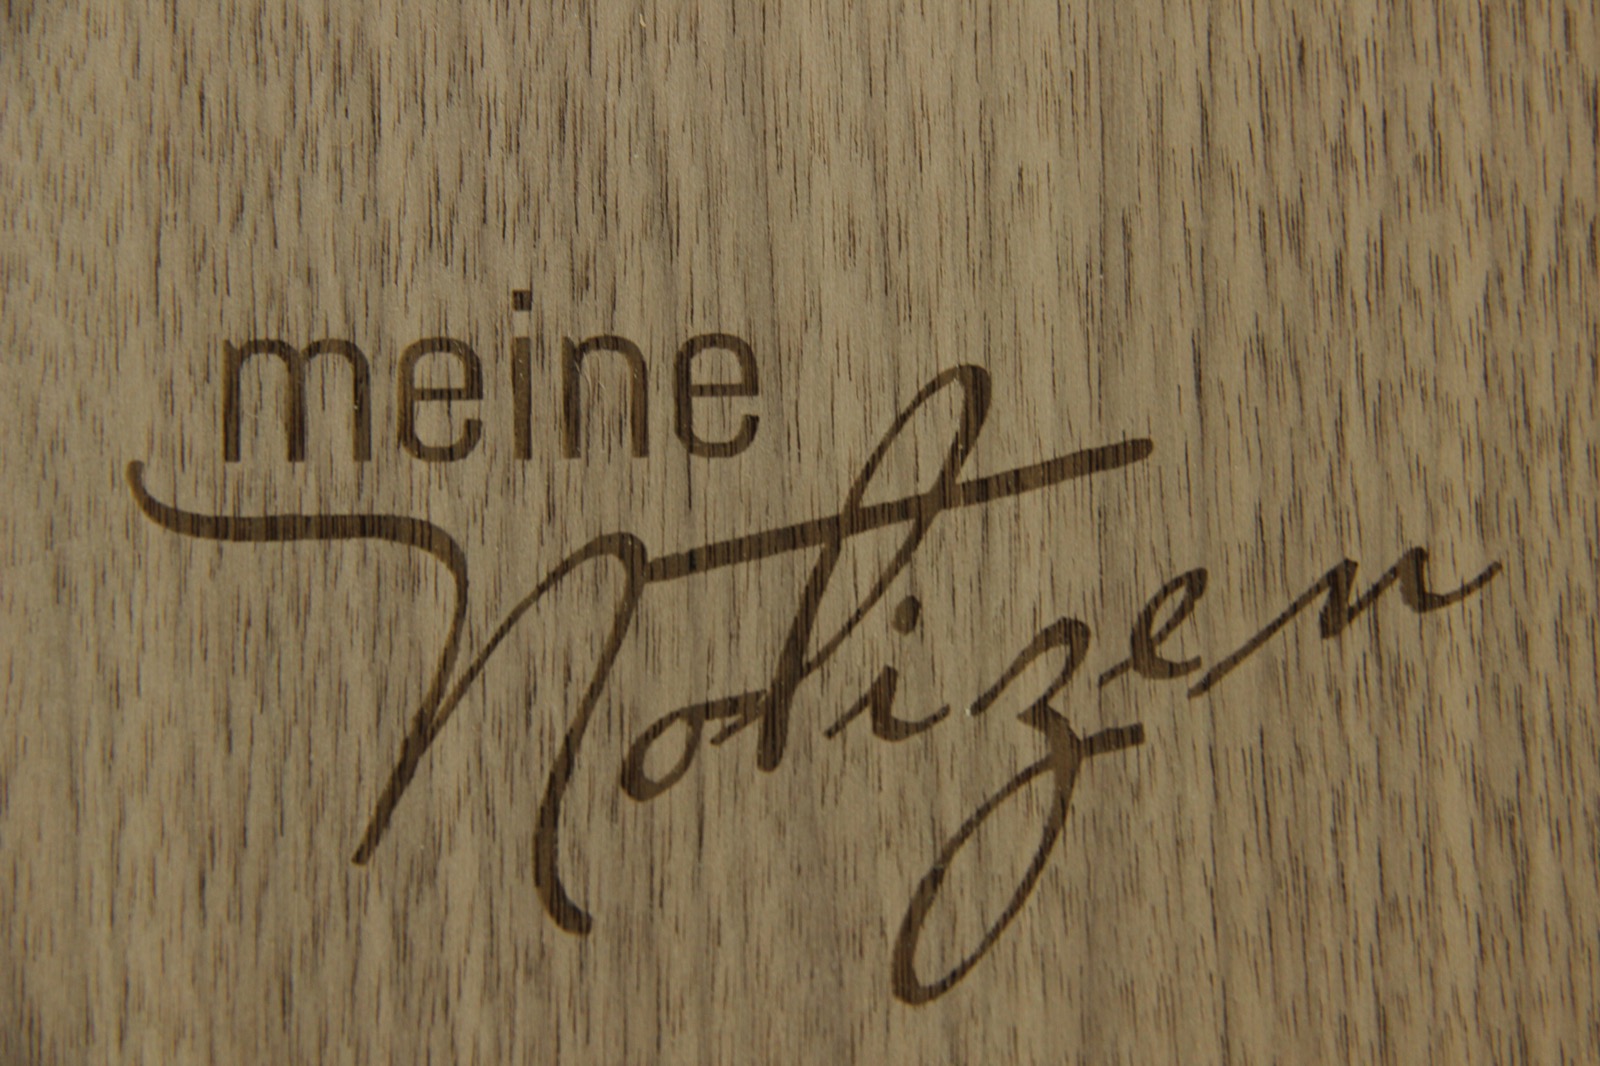 Holzgrusskarten - Notizbuch "meine Notizen" - Nuss